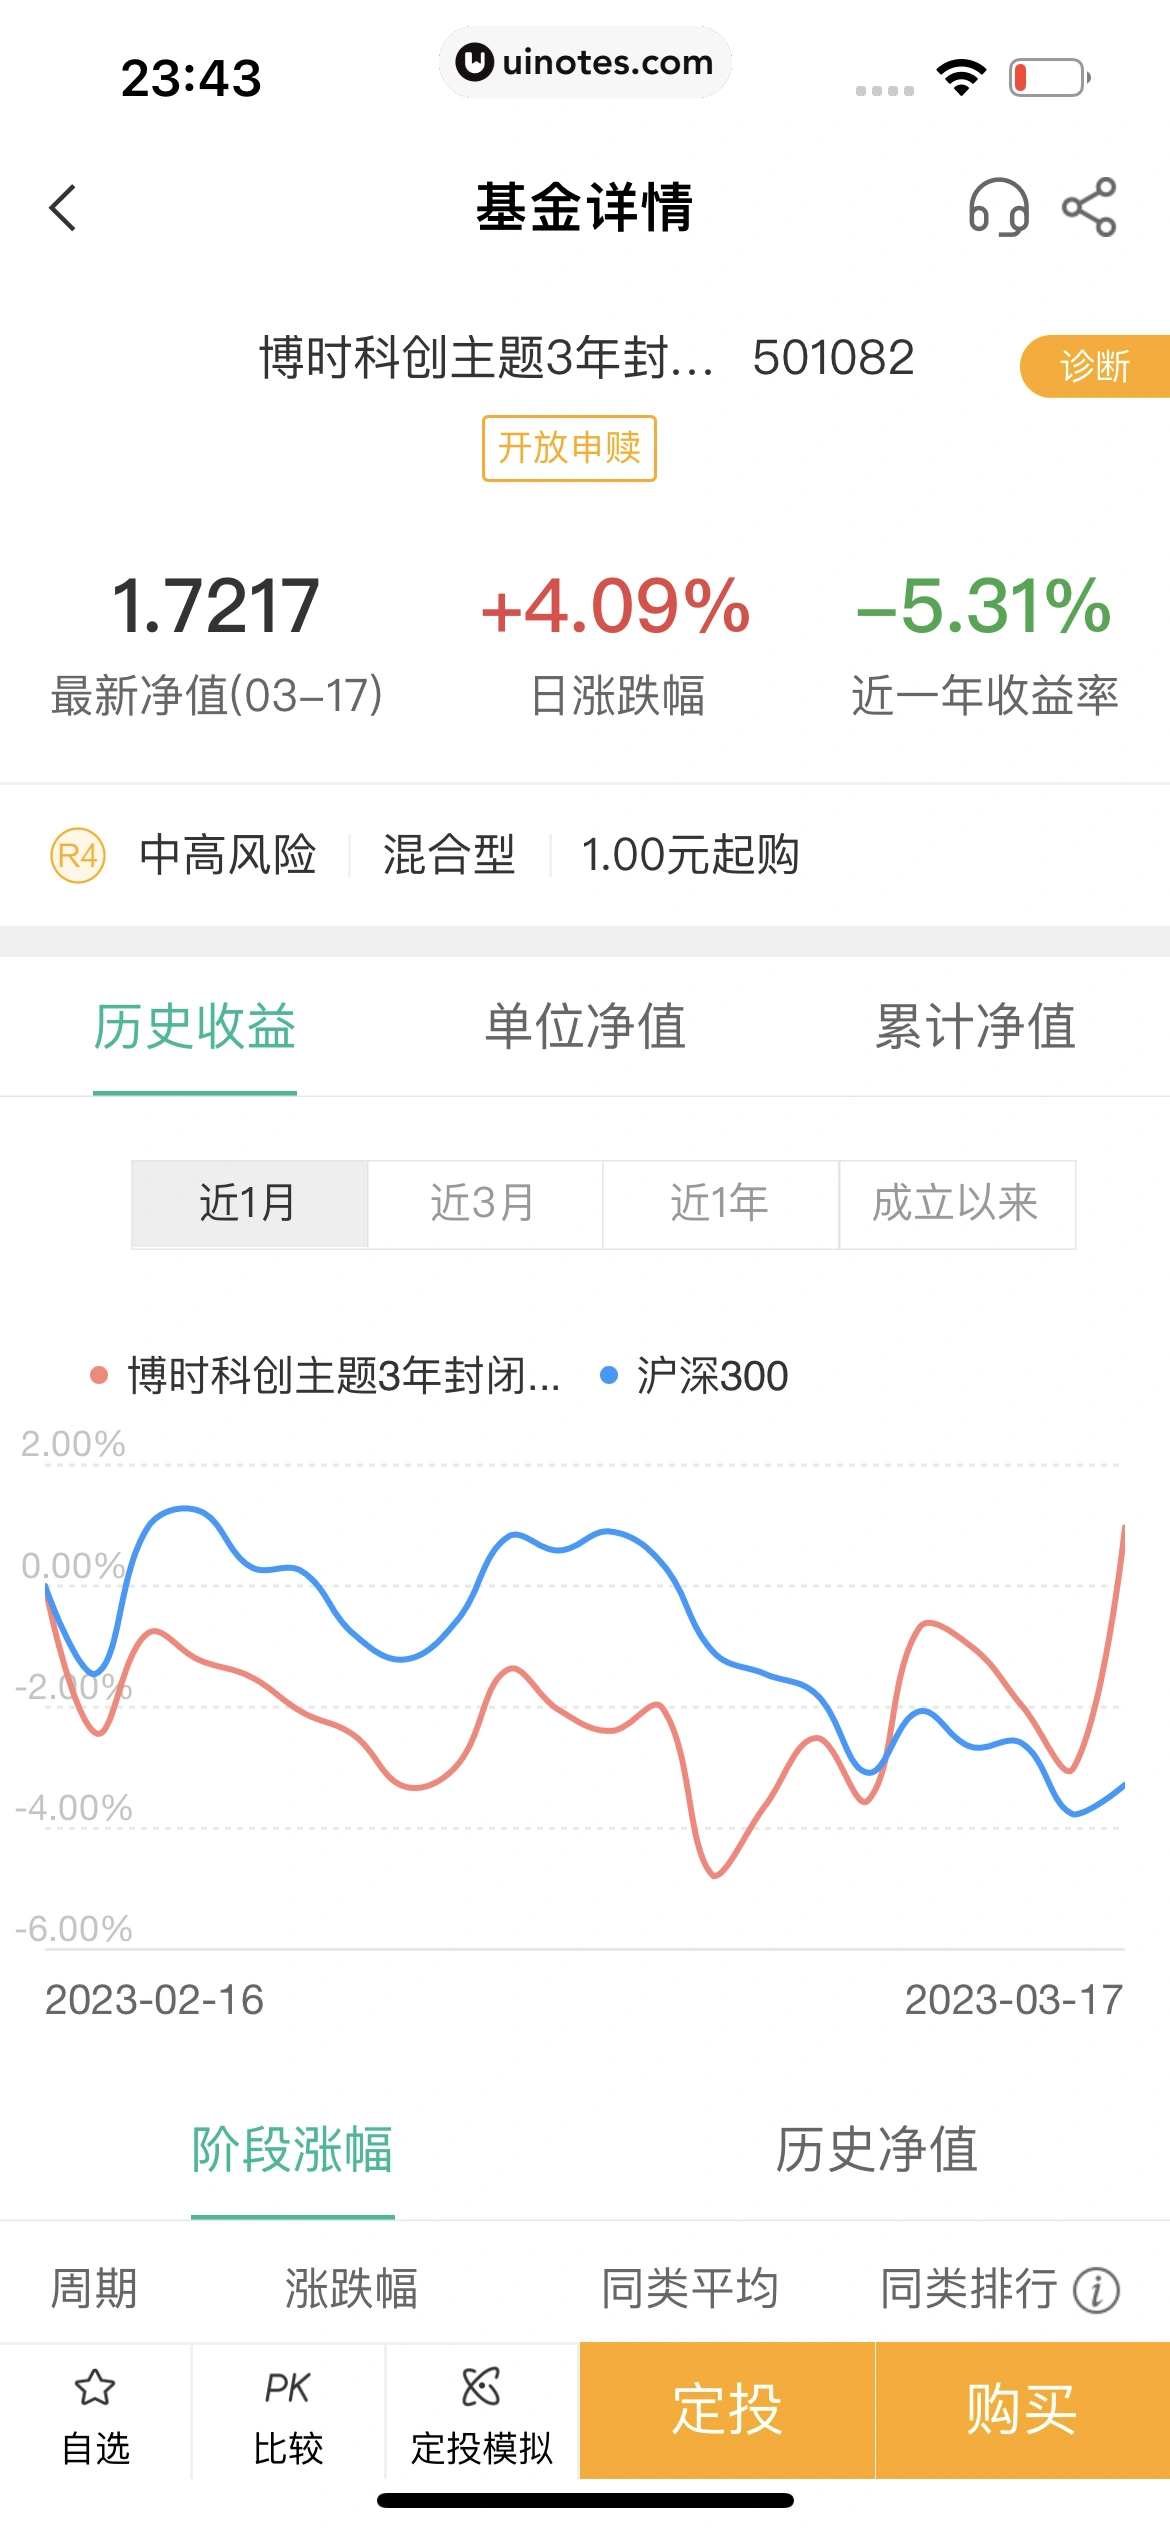 中国农业银行 App 截图 141 - UI Notes